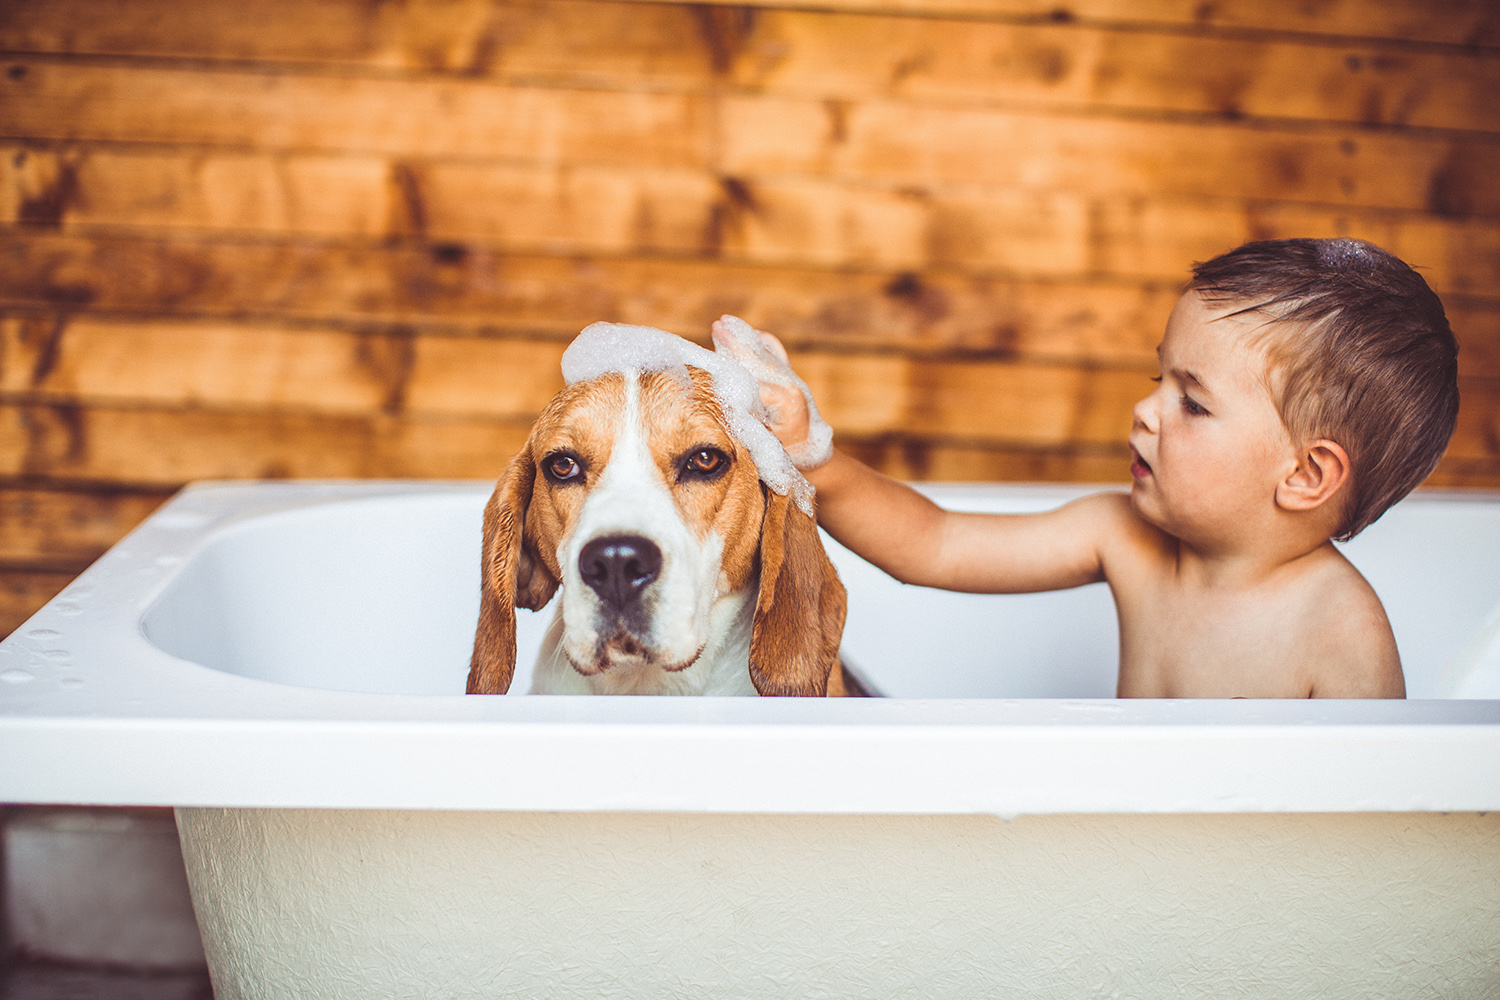 Boy in tub with dog